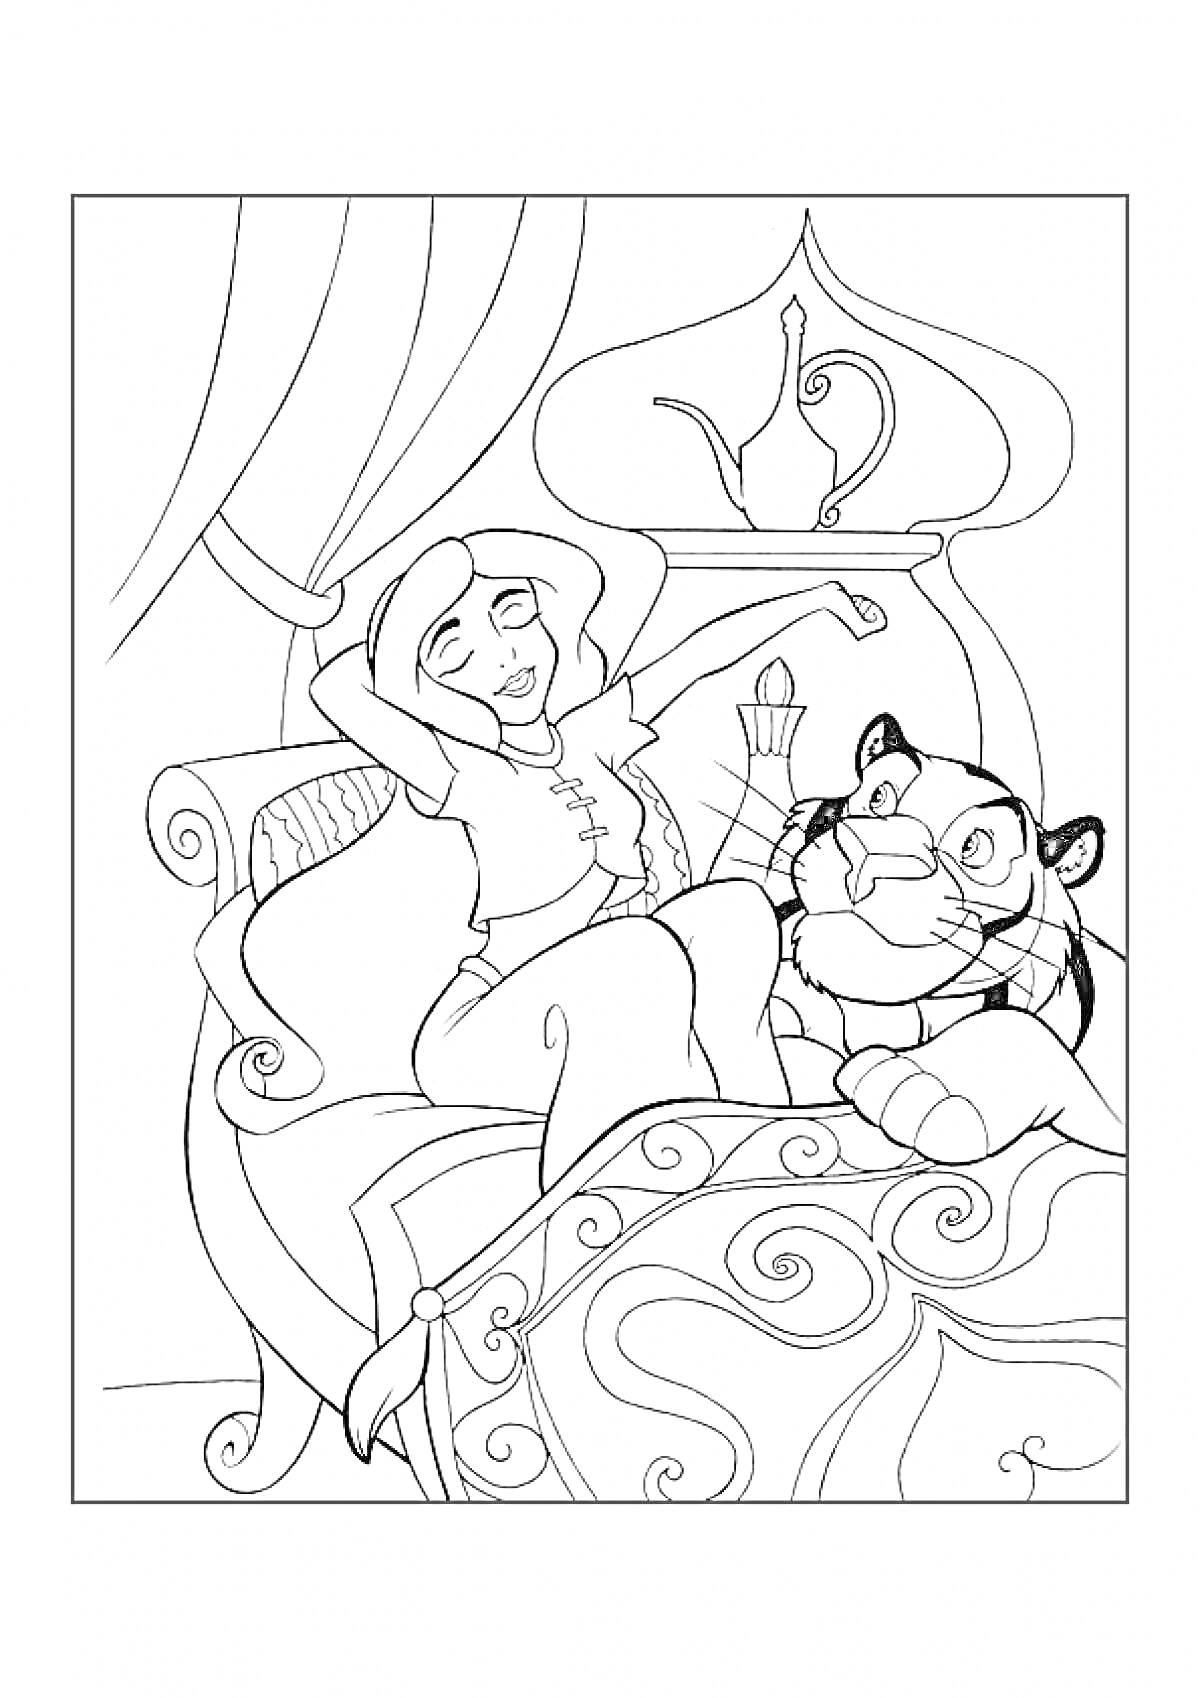 Принцесса Жасмин на кровати с тигром Раджей в уютной комнате с занавесями и чайником